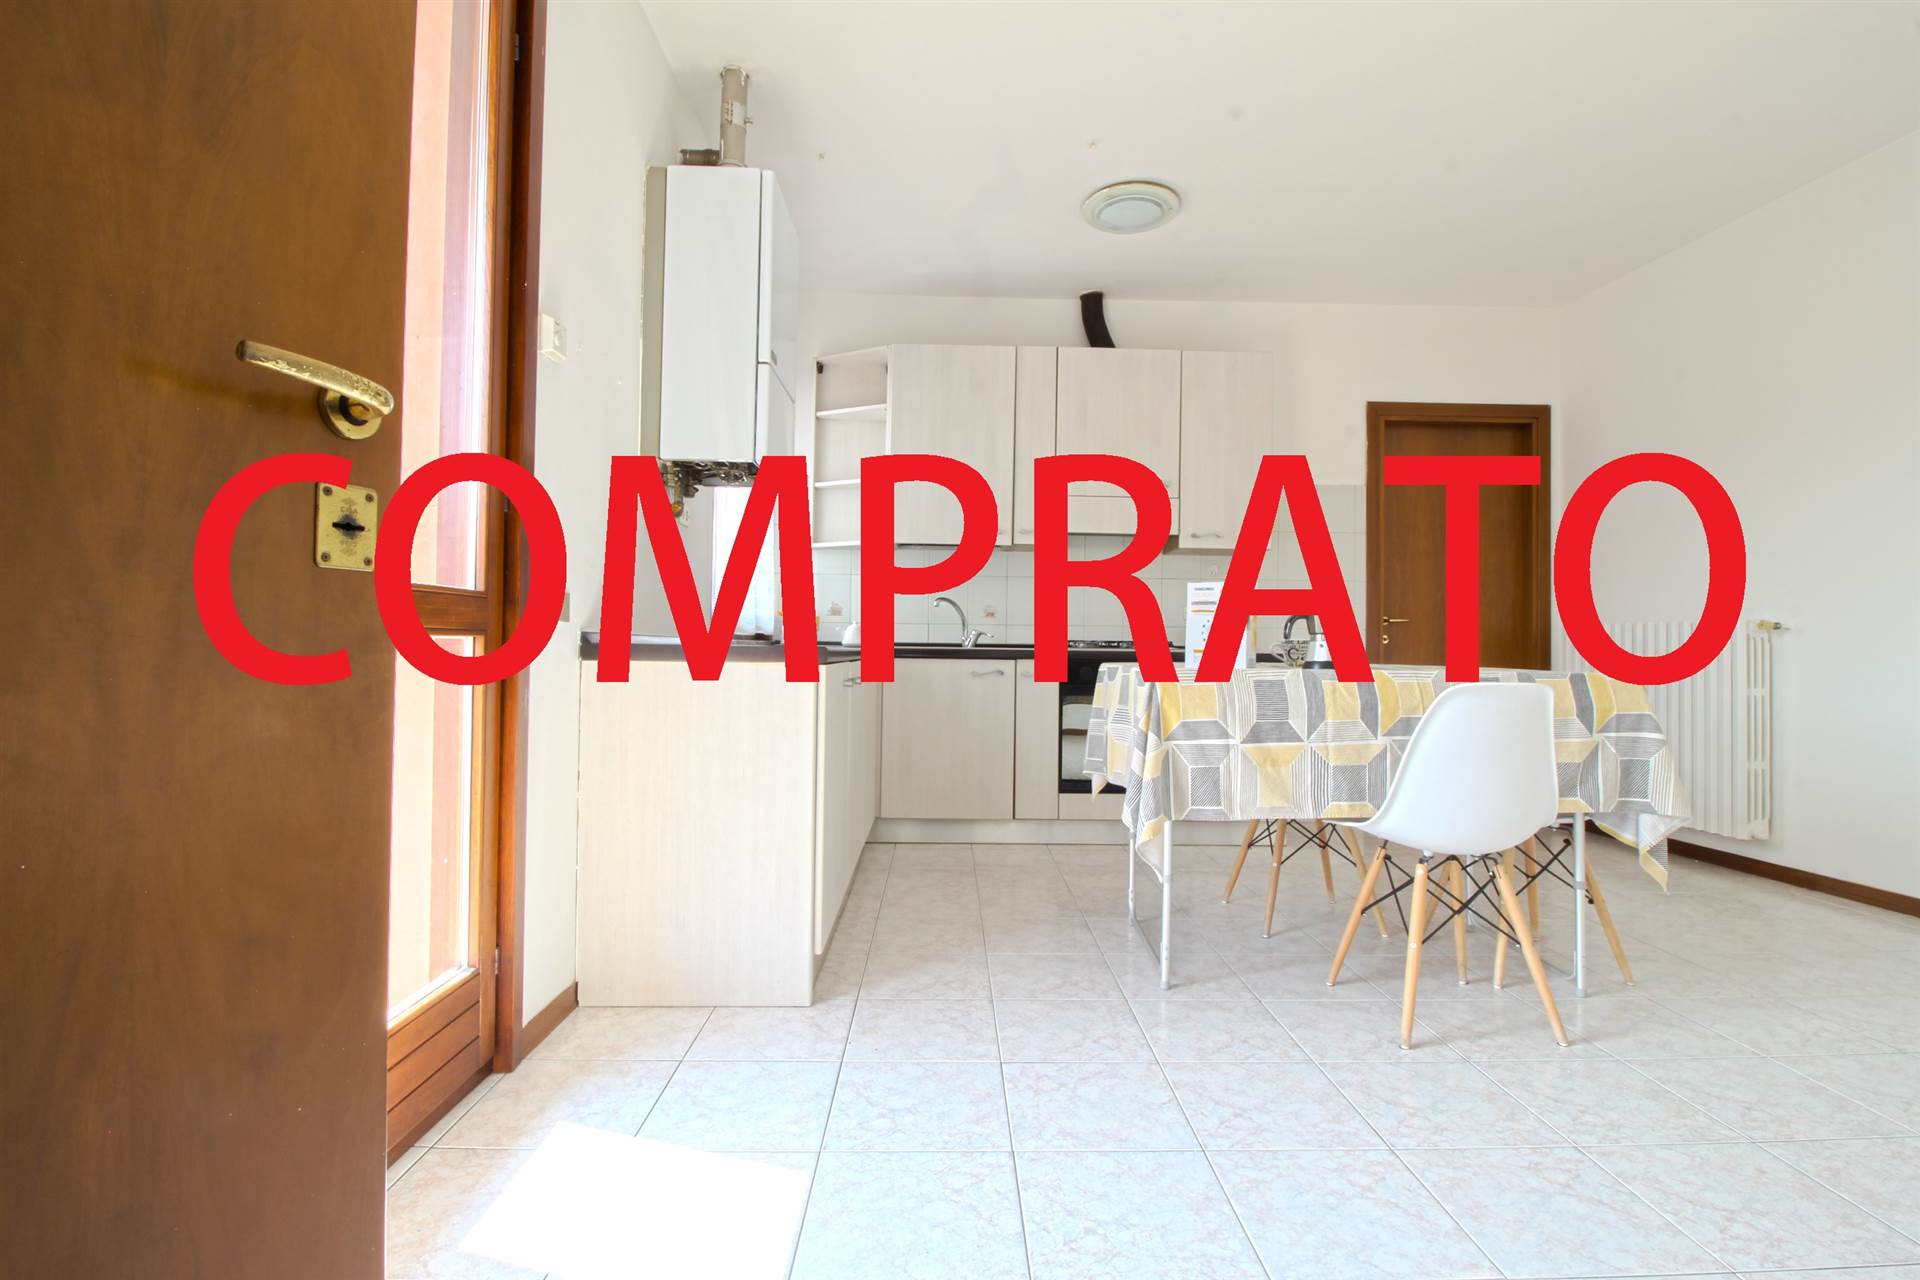 Appartamento in vendita a Cermenate, 3 locali, prezzo € 79.000 | PortaleAgenzieImmobiliari.it